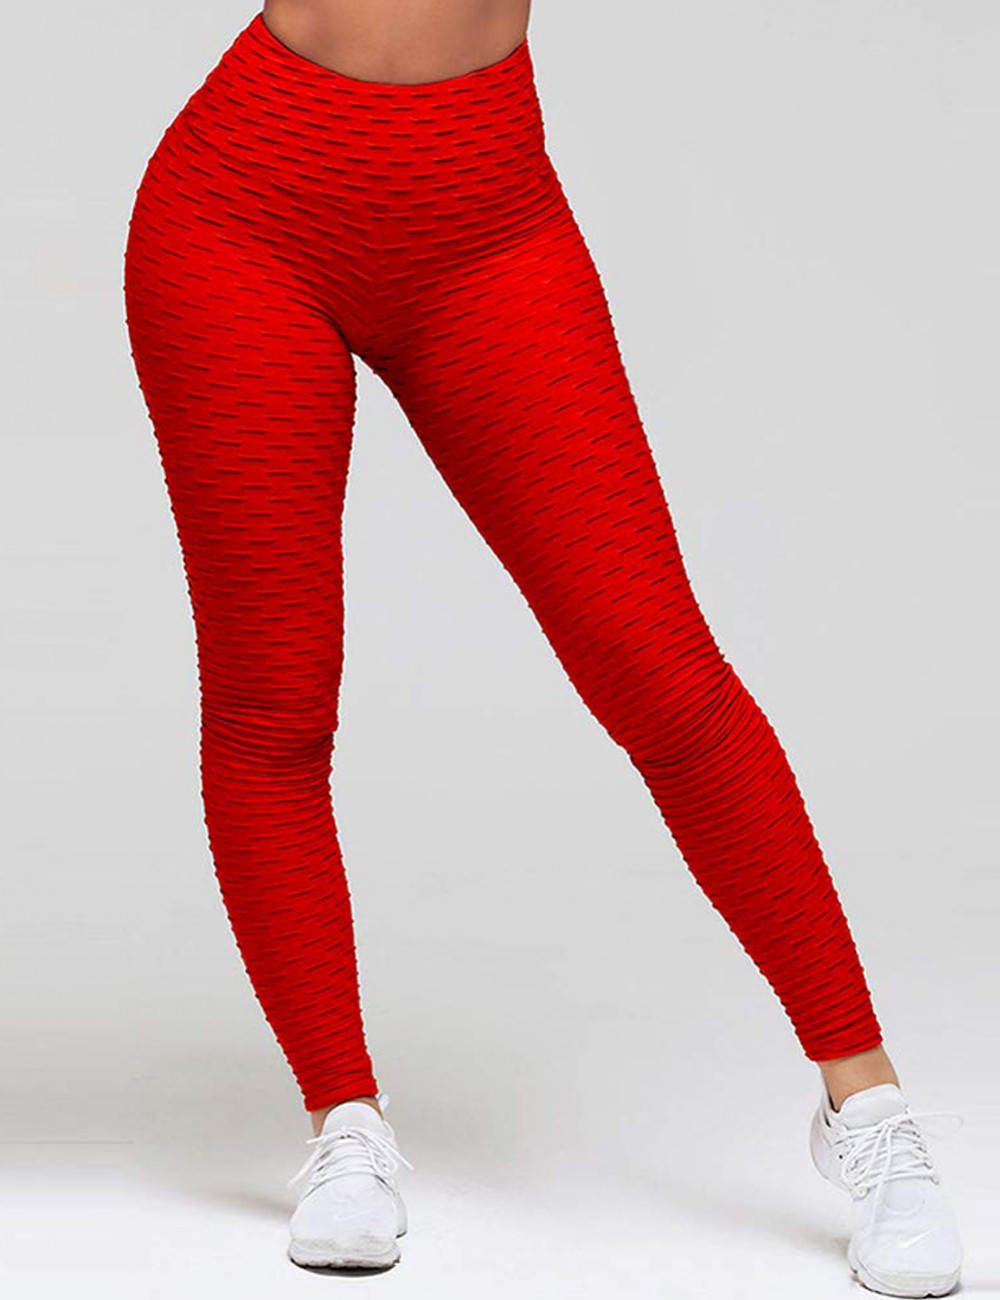 Amazing Red Full Length Jacquard Yoga Leggings Feminine Charm